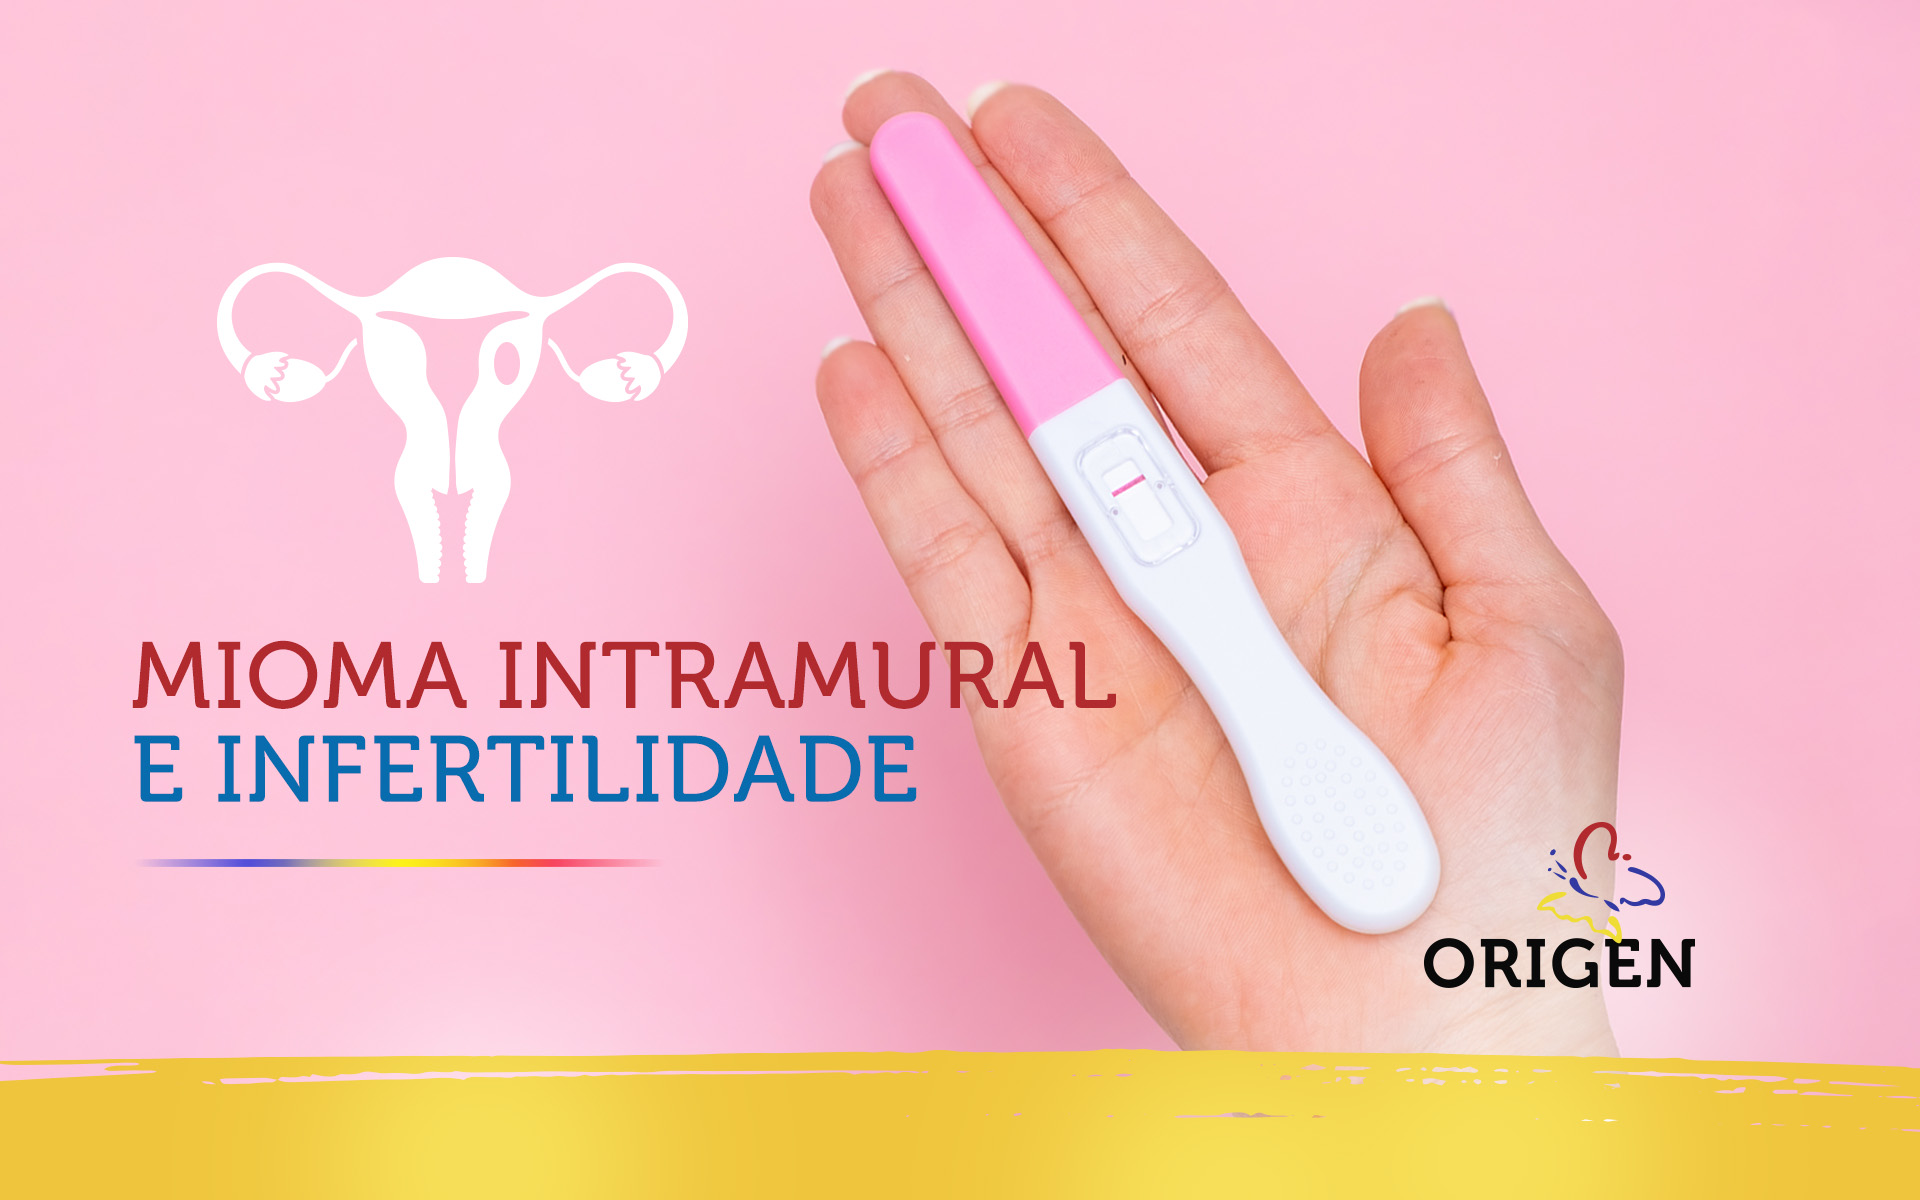 Mioma intramural e infertilidade